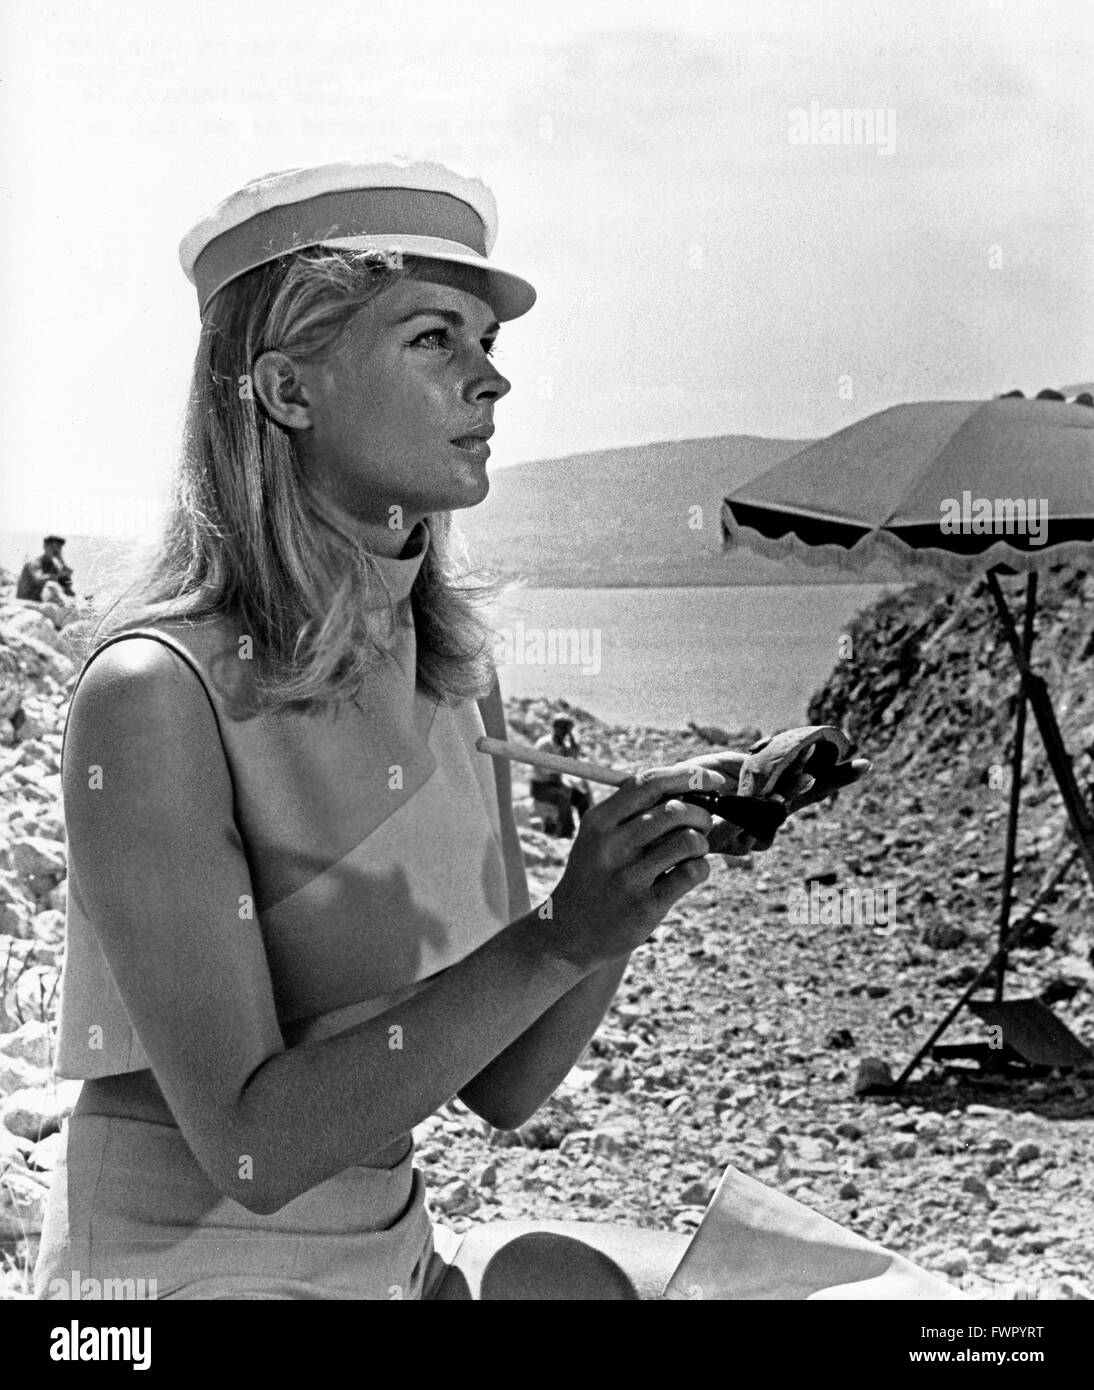 Am Tag der Fisch herauskam, auch bekannt als: Der Tag eine DM sterben Fische Kamen, Griechenland/Großbritannien/USA 1967, Regie: Mihalis Kakogiannis, Monia: Candice Bergen Stockfoto